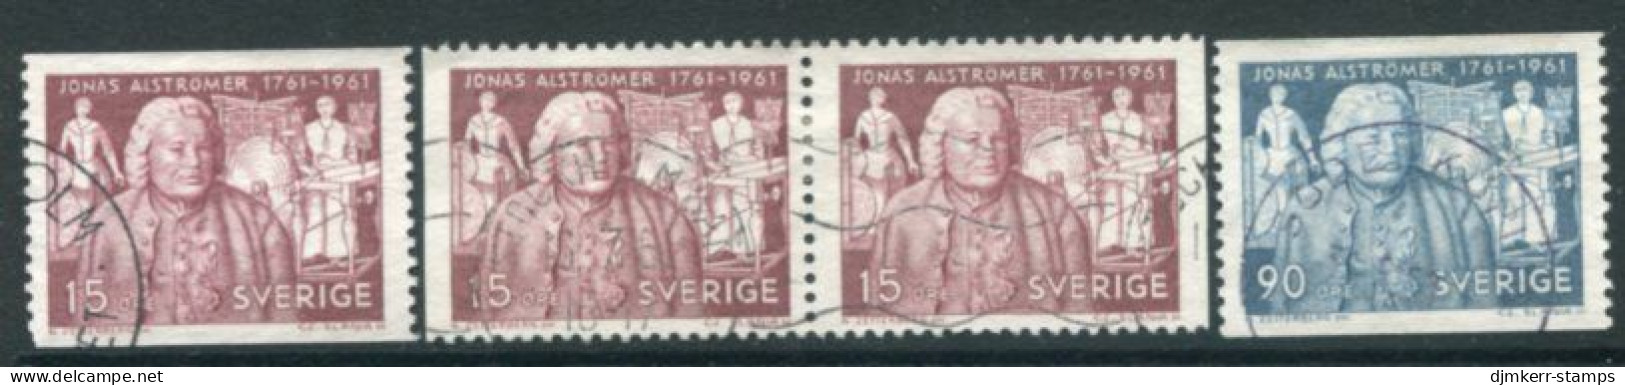 SWEDEN 1961 Alströmer Bicentenary Used.  Michel 473-74 - Usati